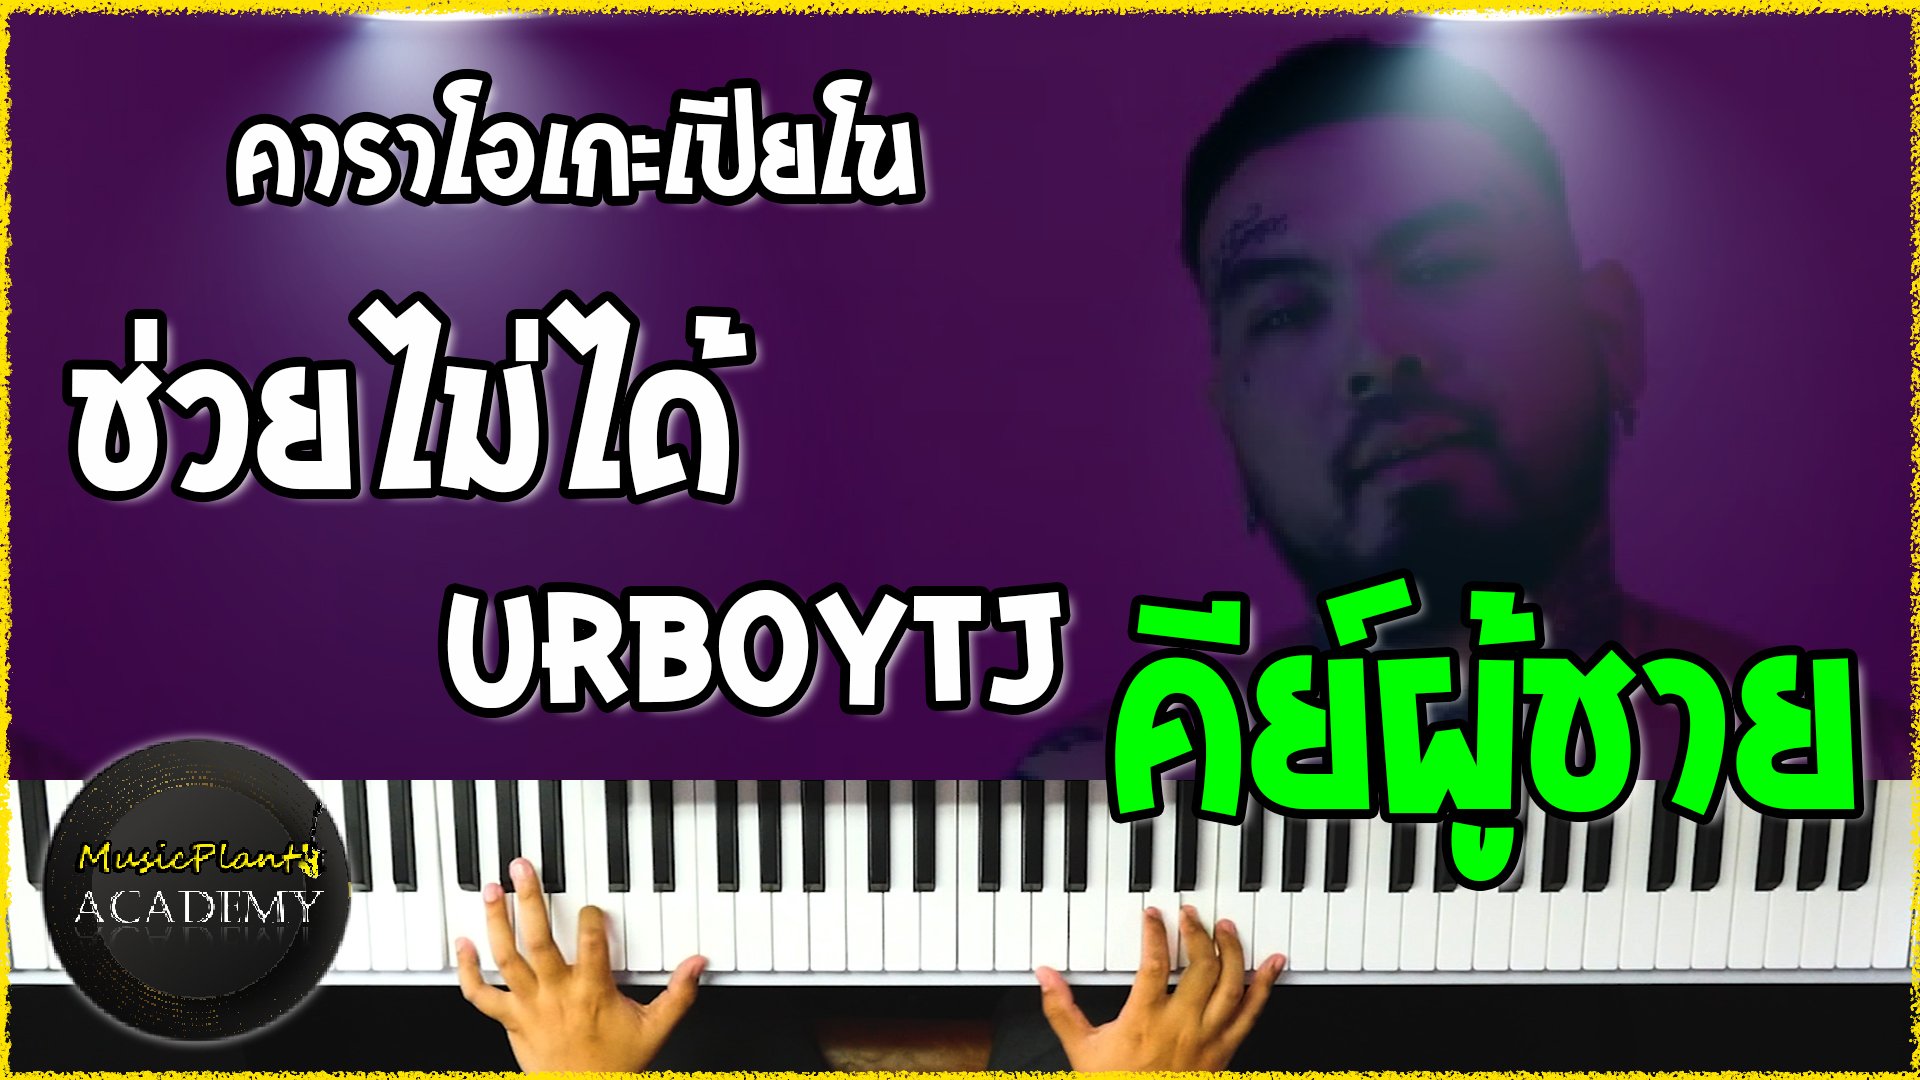 คาราโอเกะเปียโน Cover เพลง ช่วยไม่ได้ -URBOYTJ คีย์ผู้ชาย!